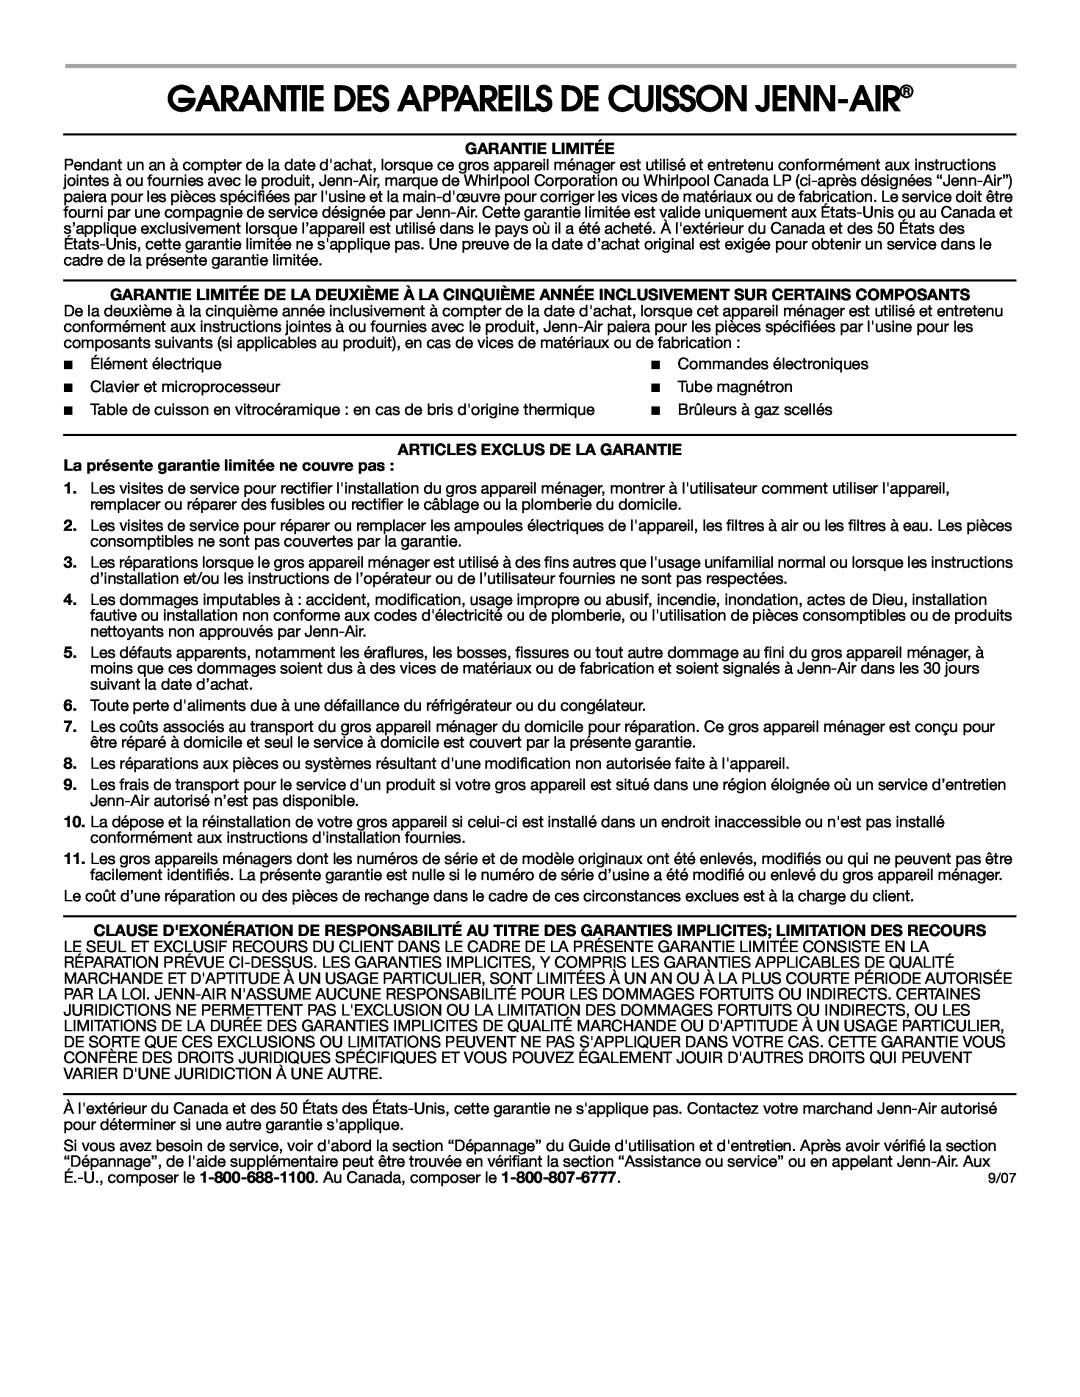 Jenn-Air 8111P533-60 Garantie Des Appareils De Cuisson Jenn-Air, Garantie Limitée, Articles Exclus De La Garantie 